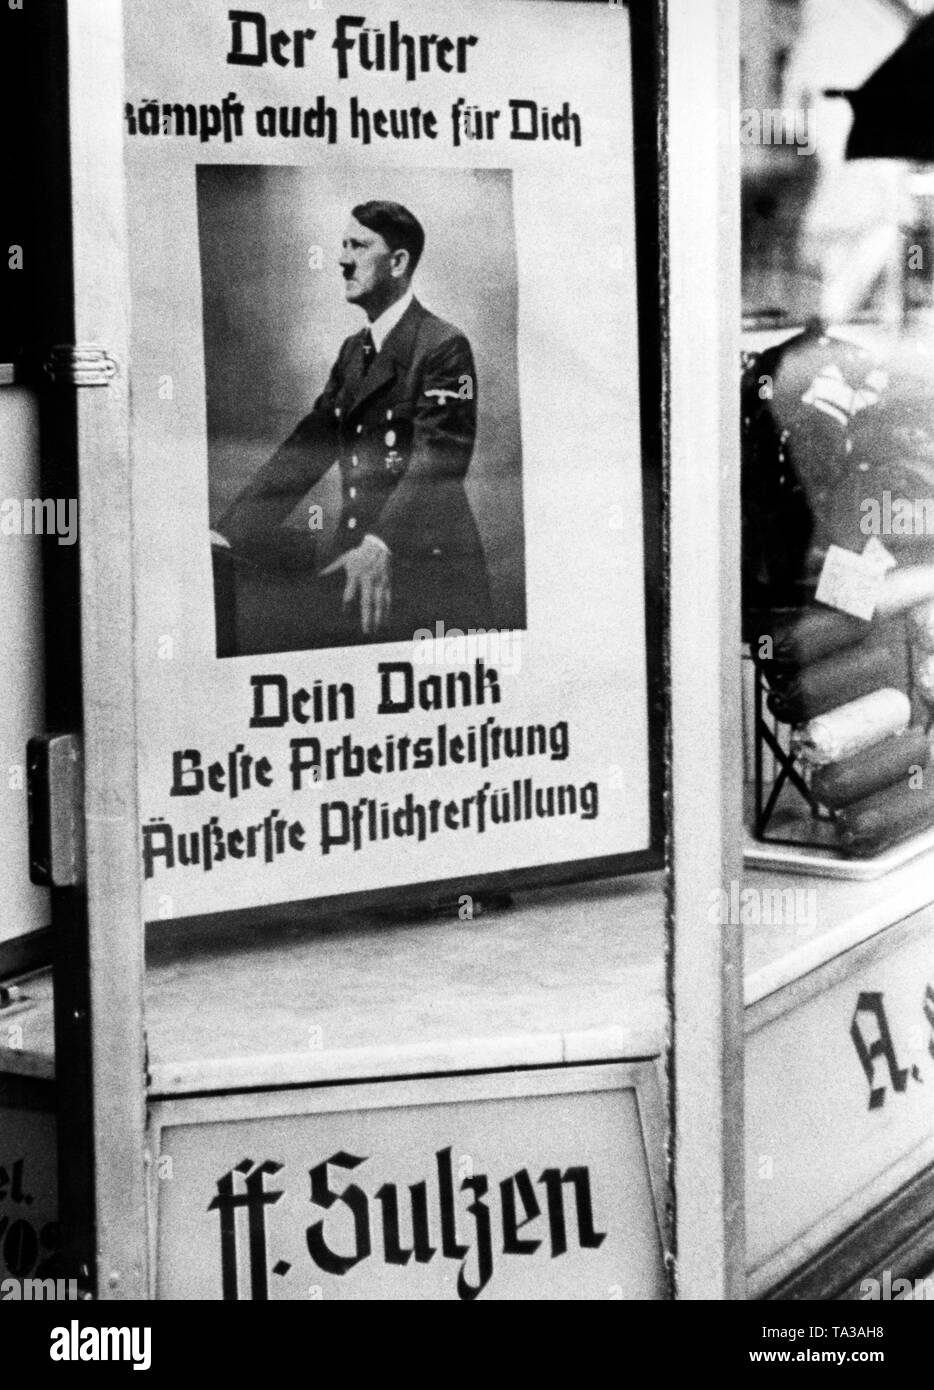 L'affiche de propagande à l'image d'Adolf Hitler et l'appeler "Le führer se bat pour vous même aujourd'hui. Votre reconnaissance est le meilleur travail et la performance de votre devoir' dans la vitrine d'un commerce de vente de textiles. Banque D'Images